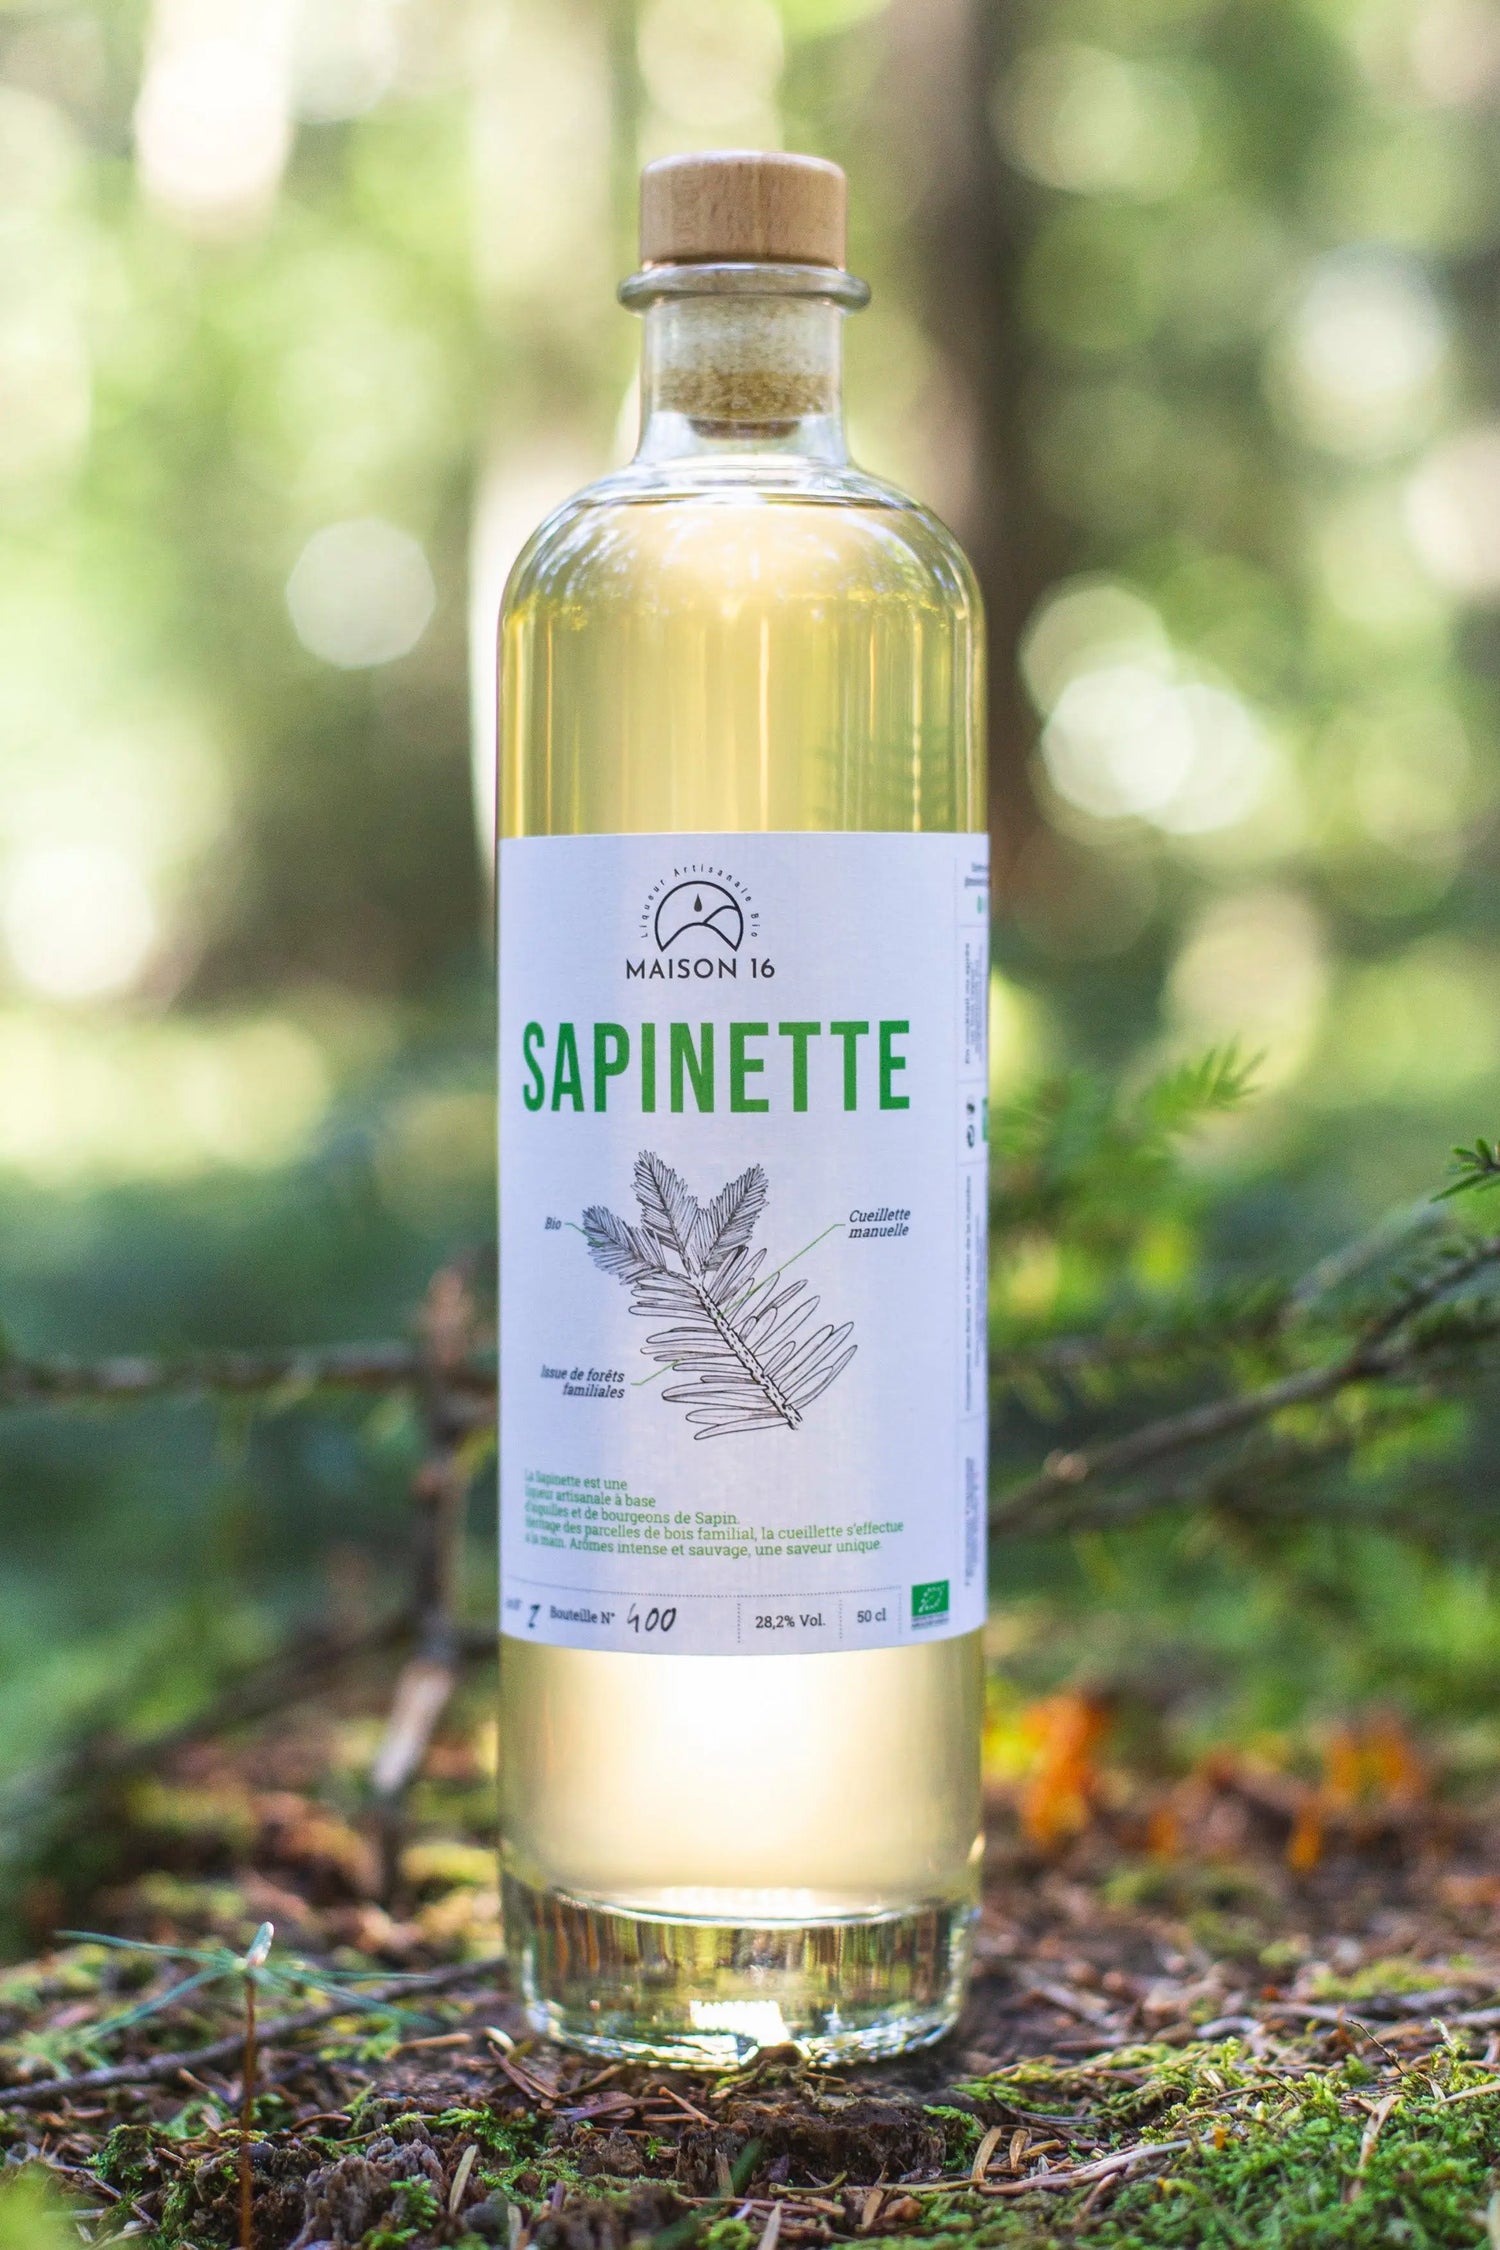 Liqueur de Sapin – Le Vert Sapin (Bouteille Satinée) – 70cl